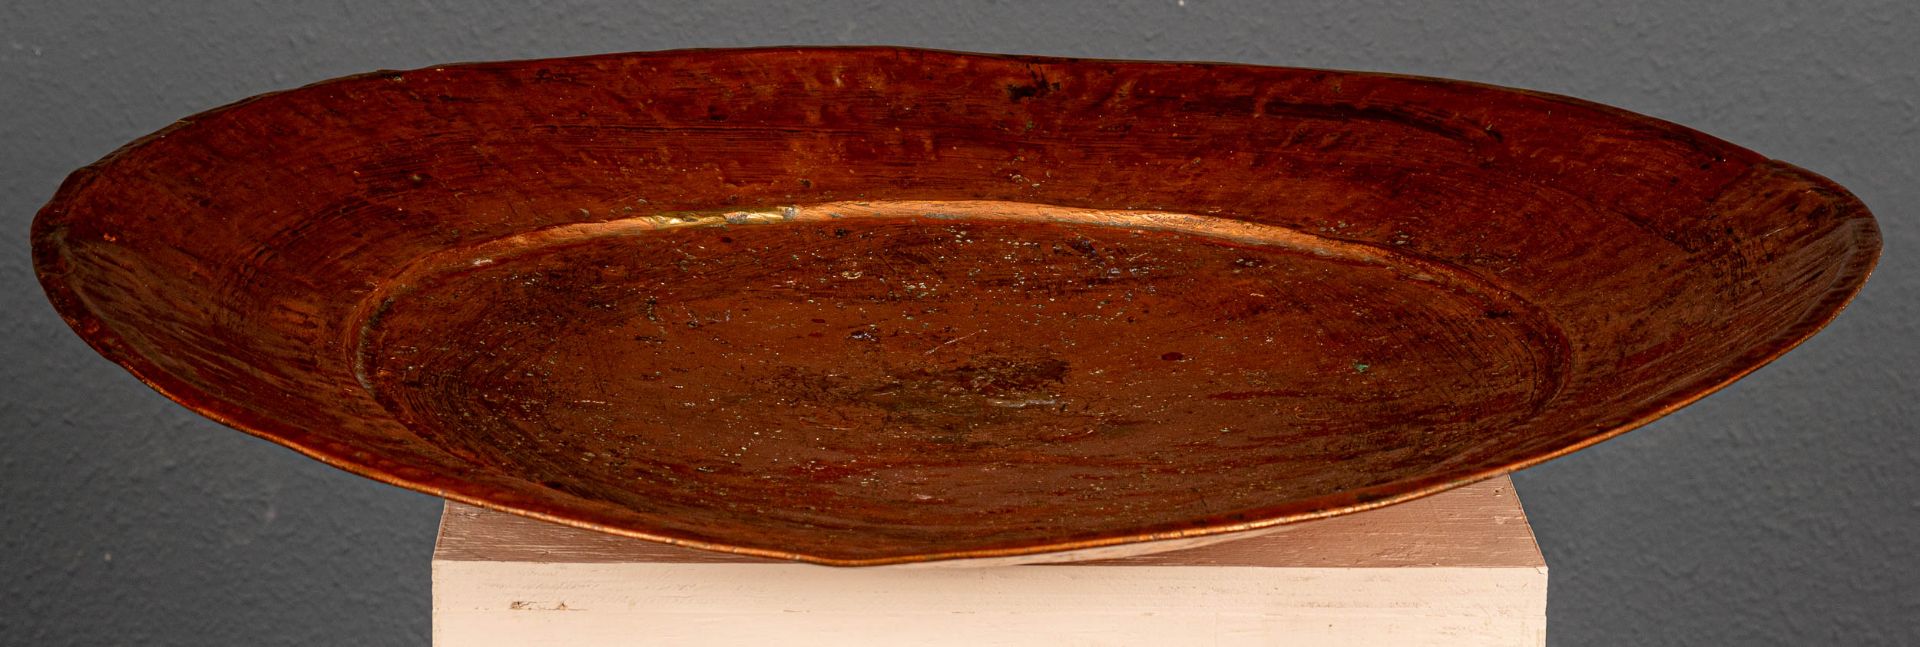 Sehr große Kupferplatte, bez.:"A 1 B", arabischer Raum, 20. Jhdt., Durchmesser ca. 71 cm. - Image 3 of 7